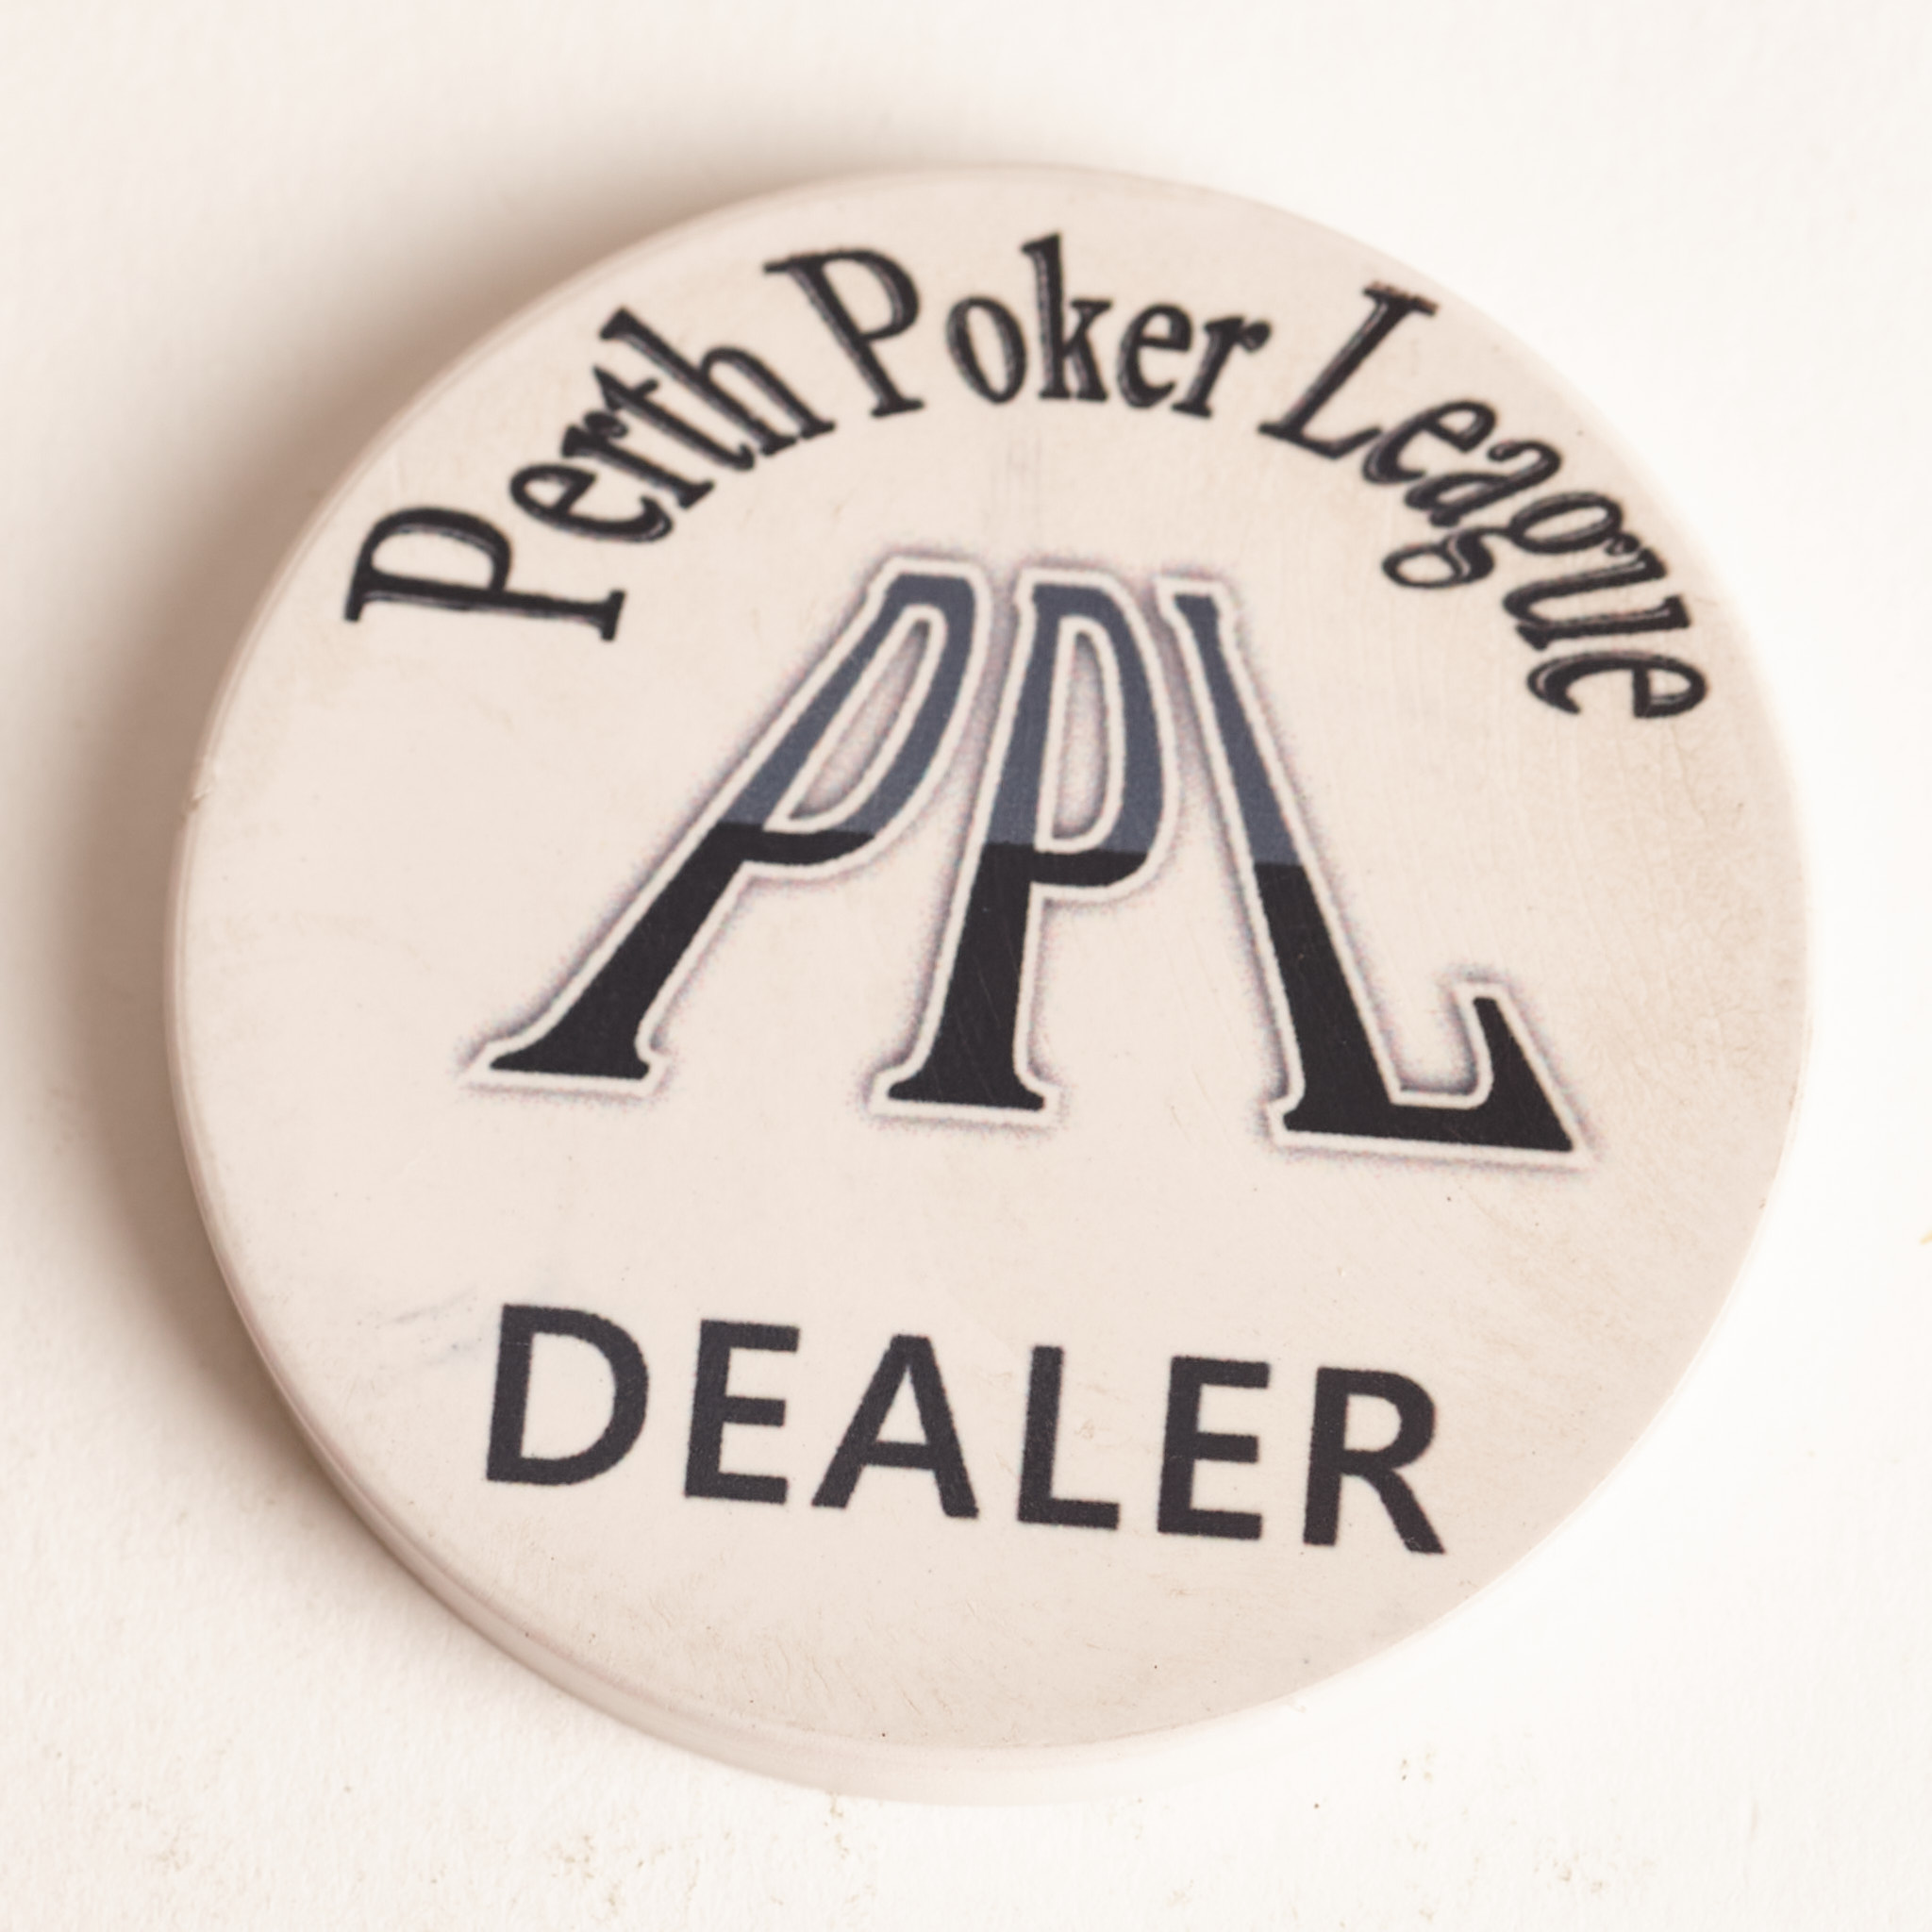 PPL PERTH POKER LEAGUE, DEALER, Poker Card Guard DEALER Button